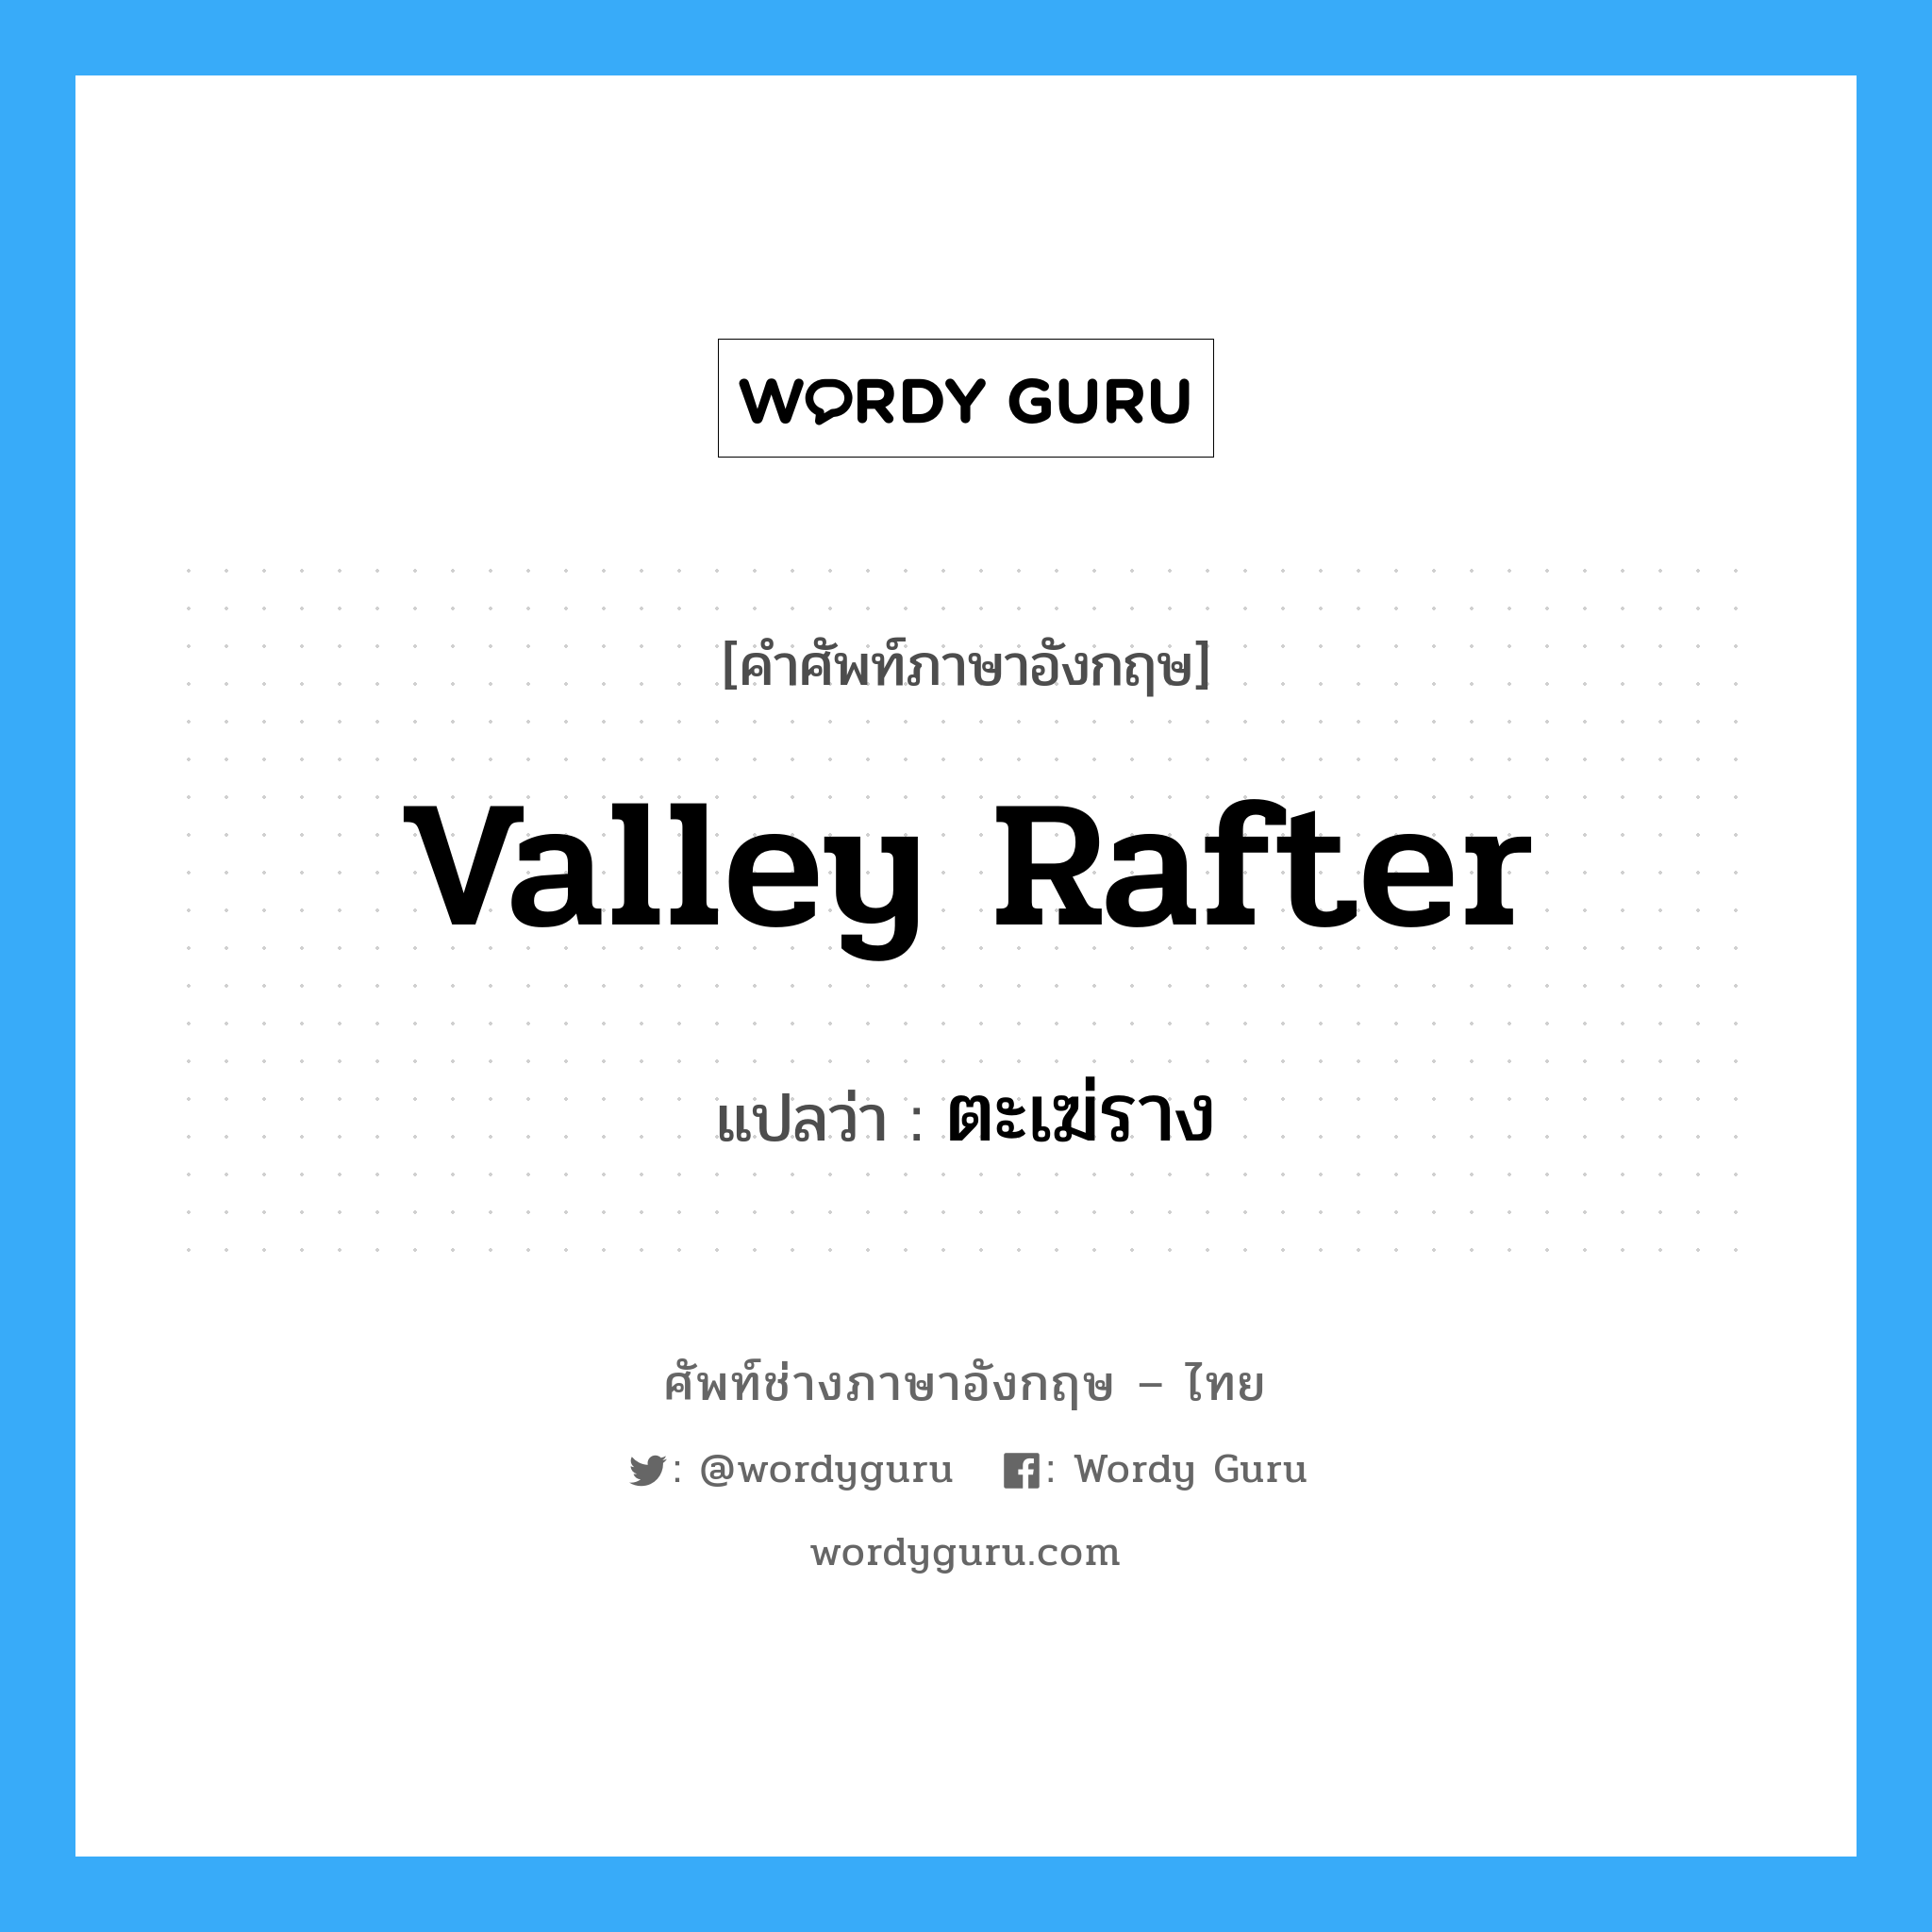 valley rafter แปลว่า?, คำศัพท์ช่างภาษาอังกฤษ - ไทย valley rafter คำศัพท์ภาษาอังกฤษ valley rafter แปลว่า ตะเฆ่ราง